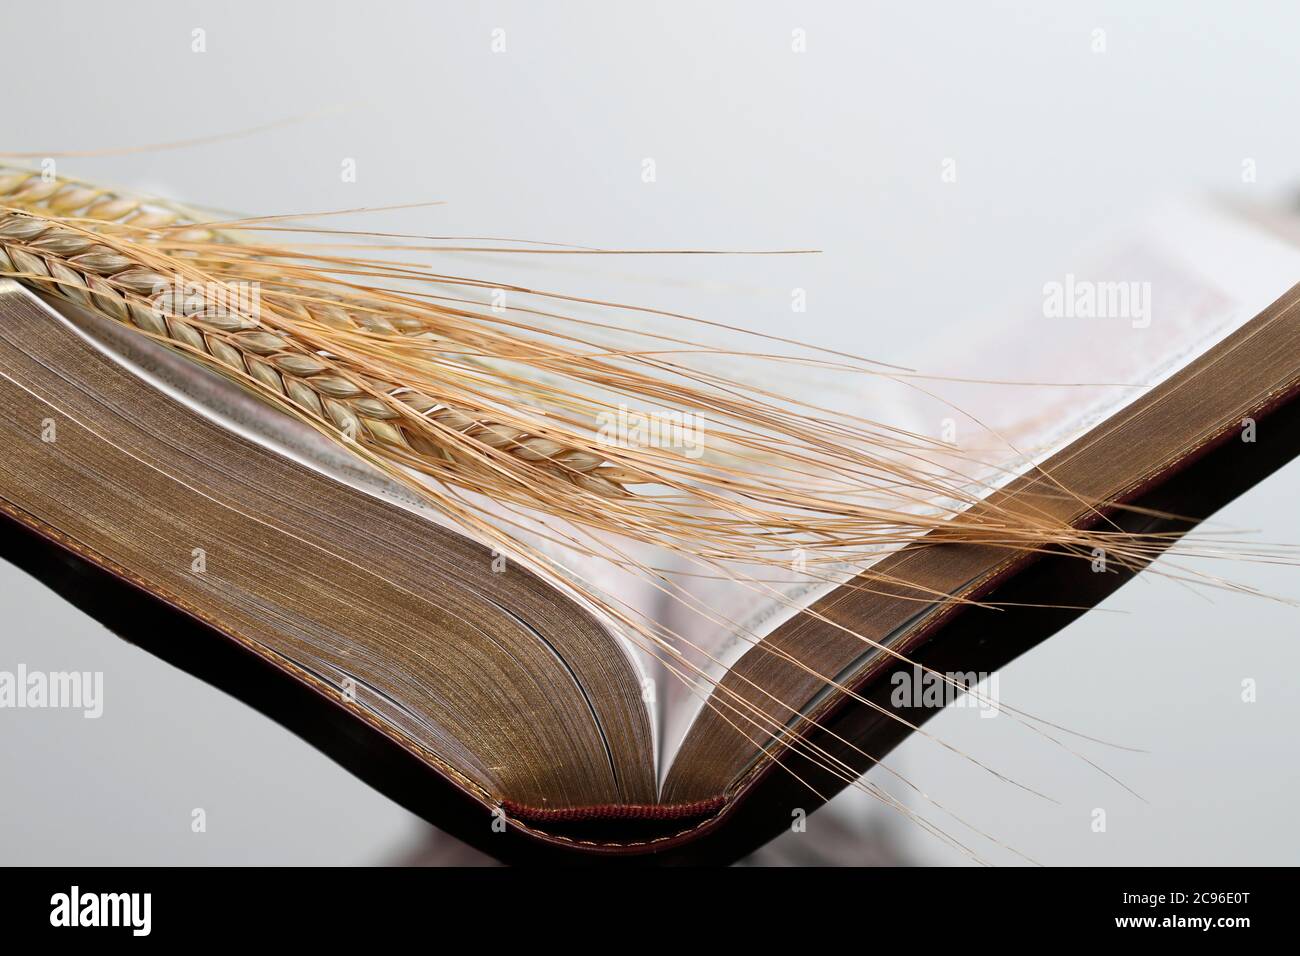 Le livre sacré de la Bible et les oreilles de blé comme symbole de la nourriture spirituelle et physique. France. Banque D'Images